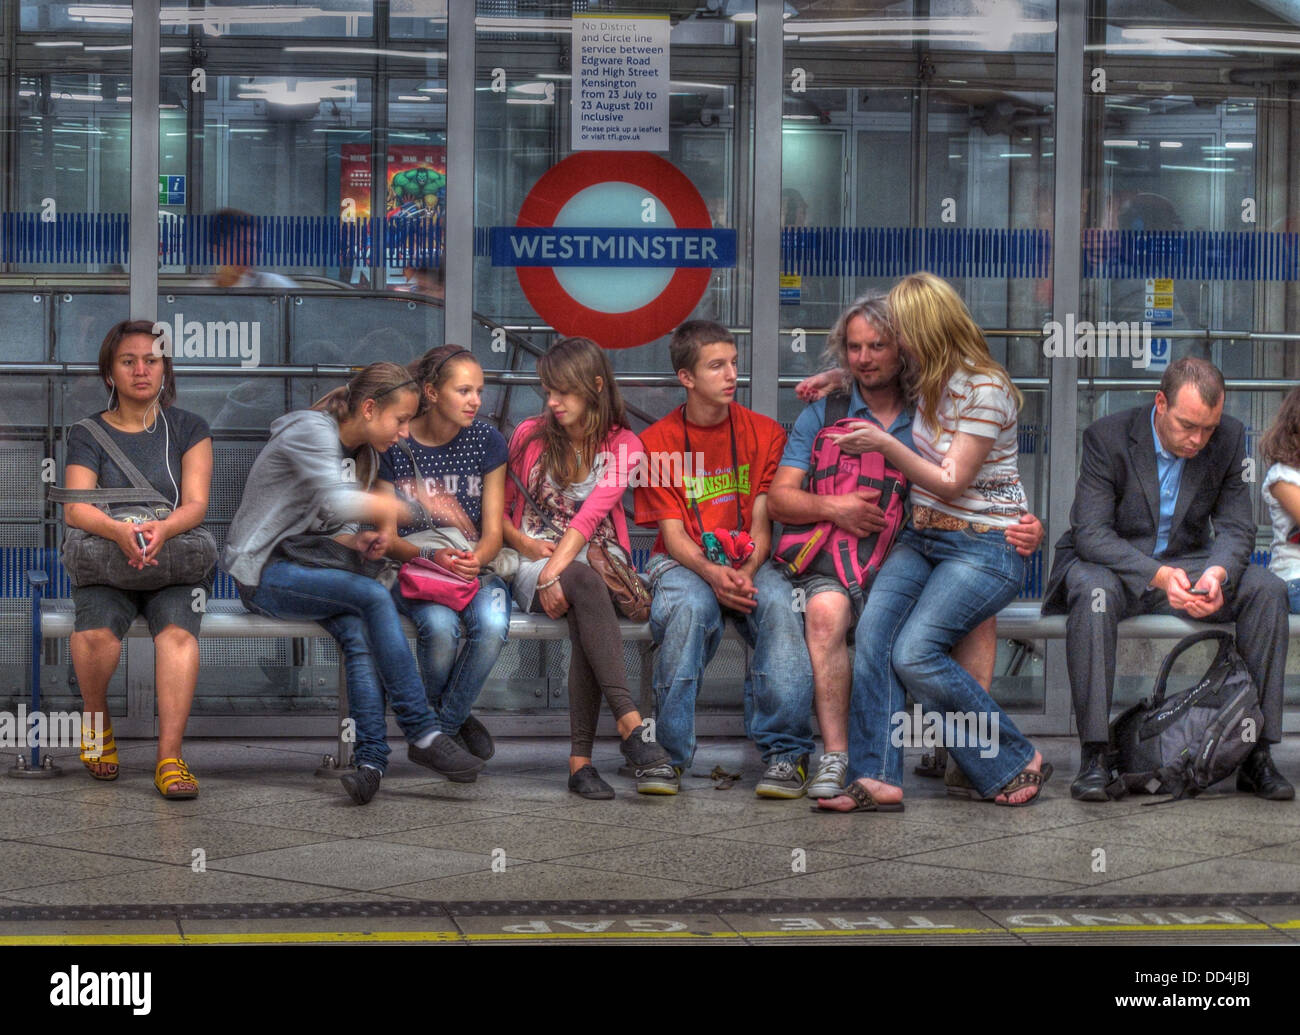 On Westminster Tube Station, London, England UK Stock Photo